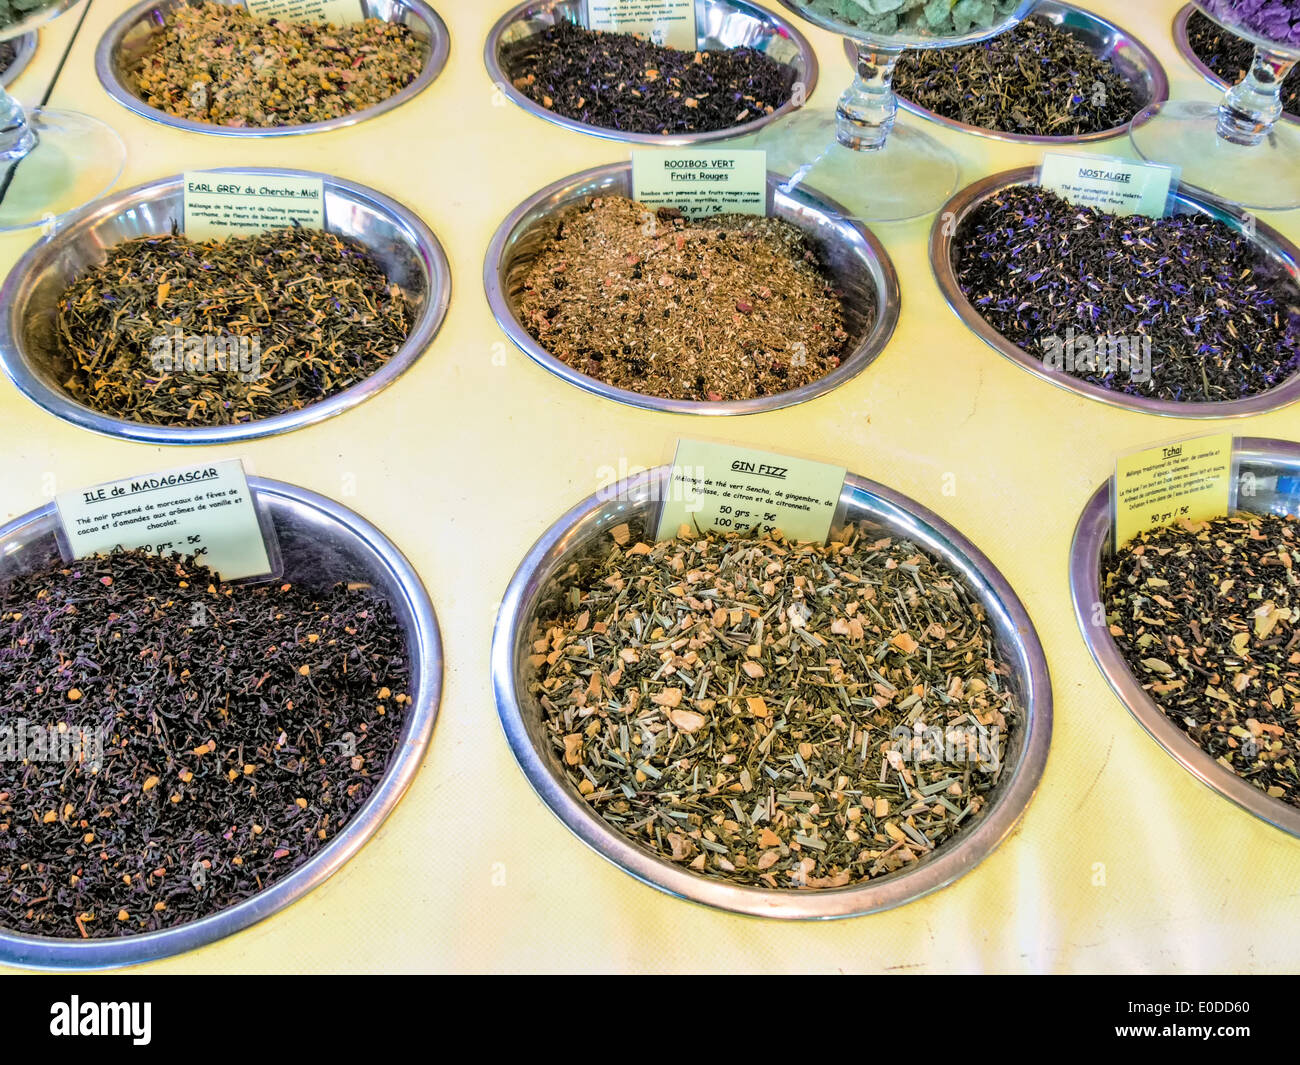 A big choice in spices at a spice market, Eine grosse Auswahl an Gewuerzen auf einem Gewuerzmarkt Stock Photo